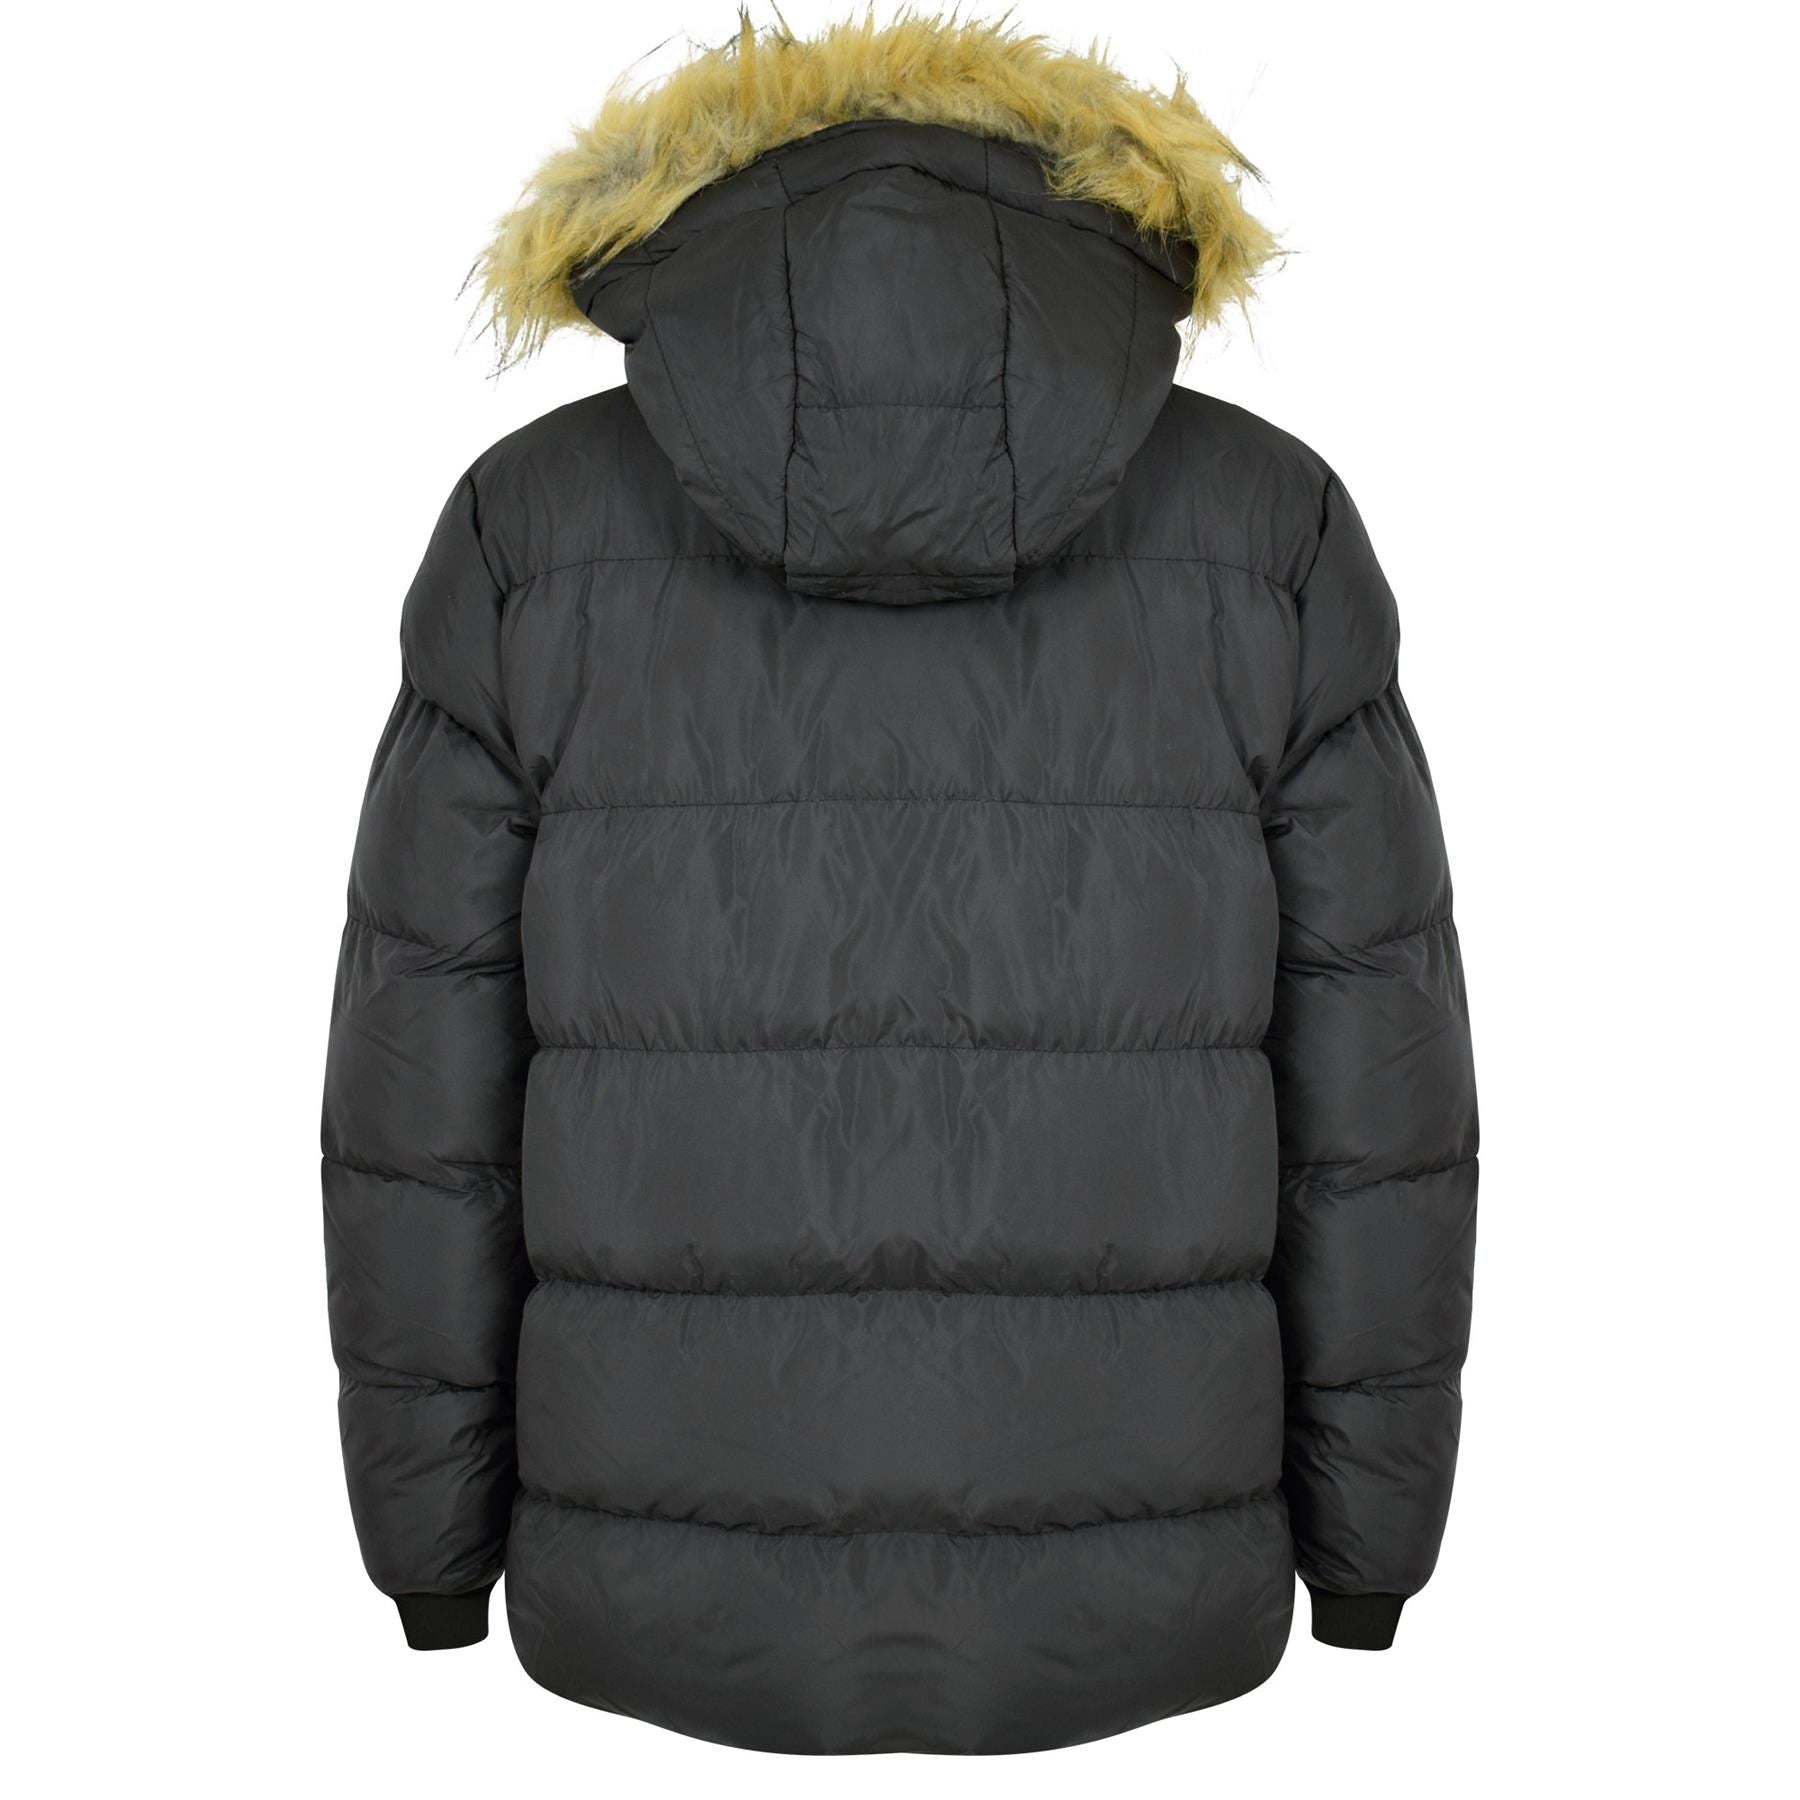 Kids Boys Black Fleece Lined Jacket Padded Winter Hooded